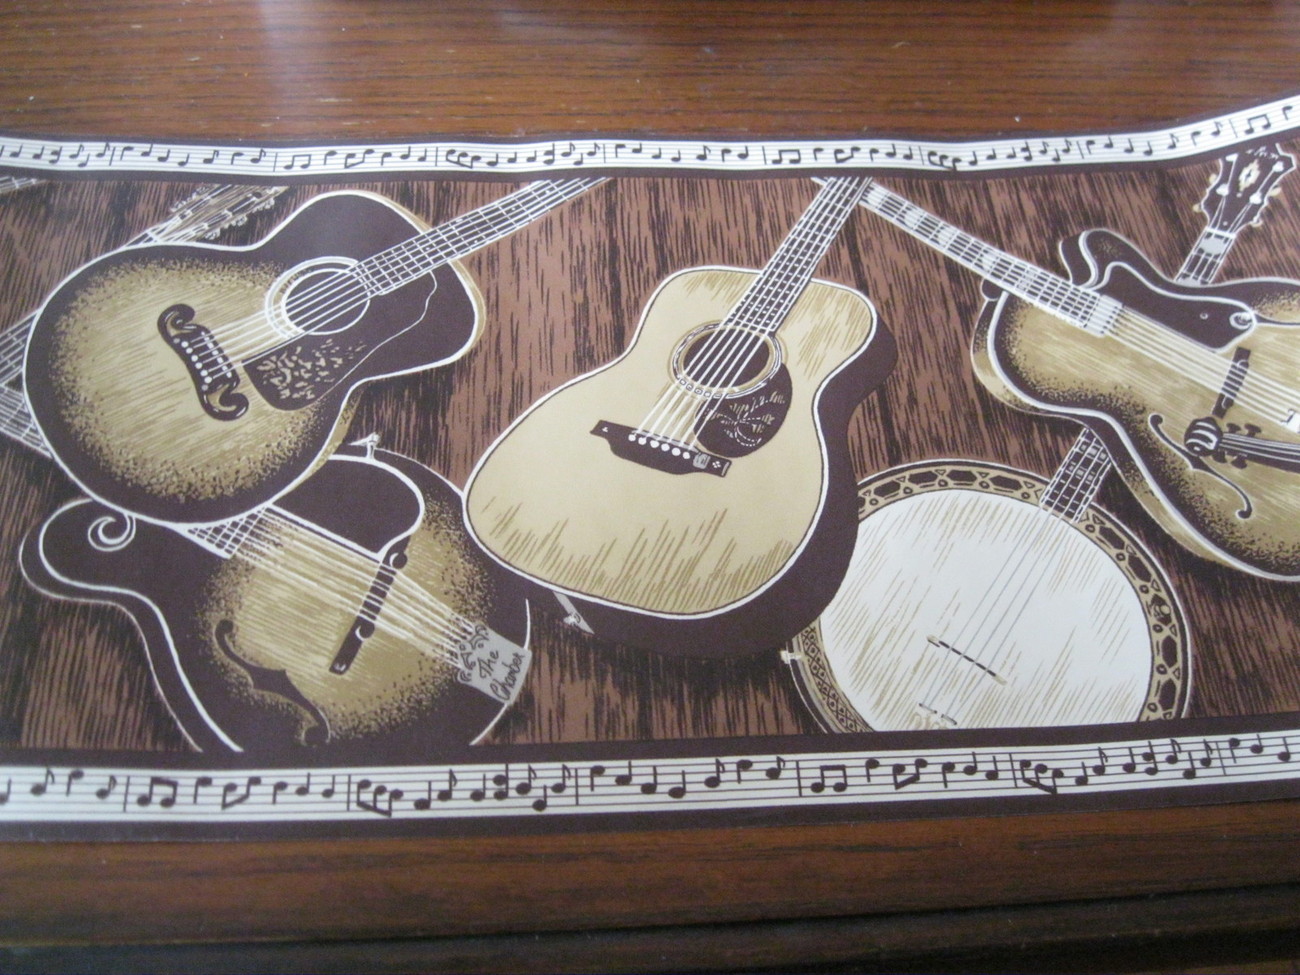 bordure de papier peint de musique,guitare,instrument de musique,instruments à cordes pincées,guitare acoustique